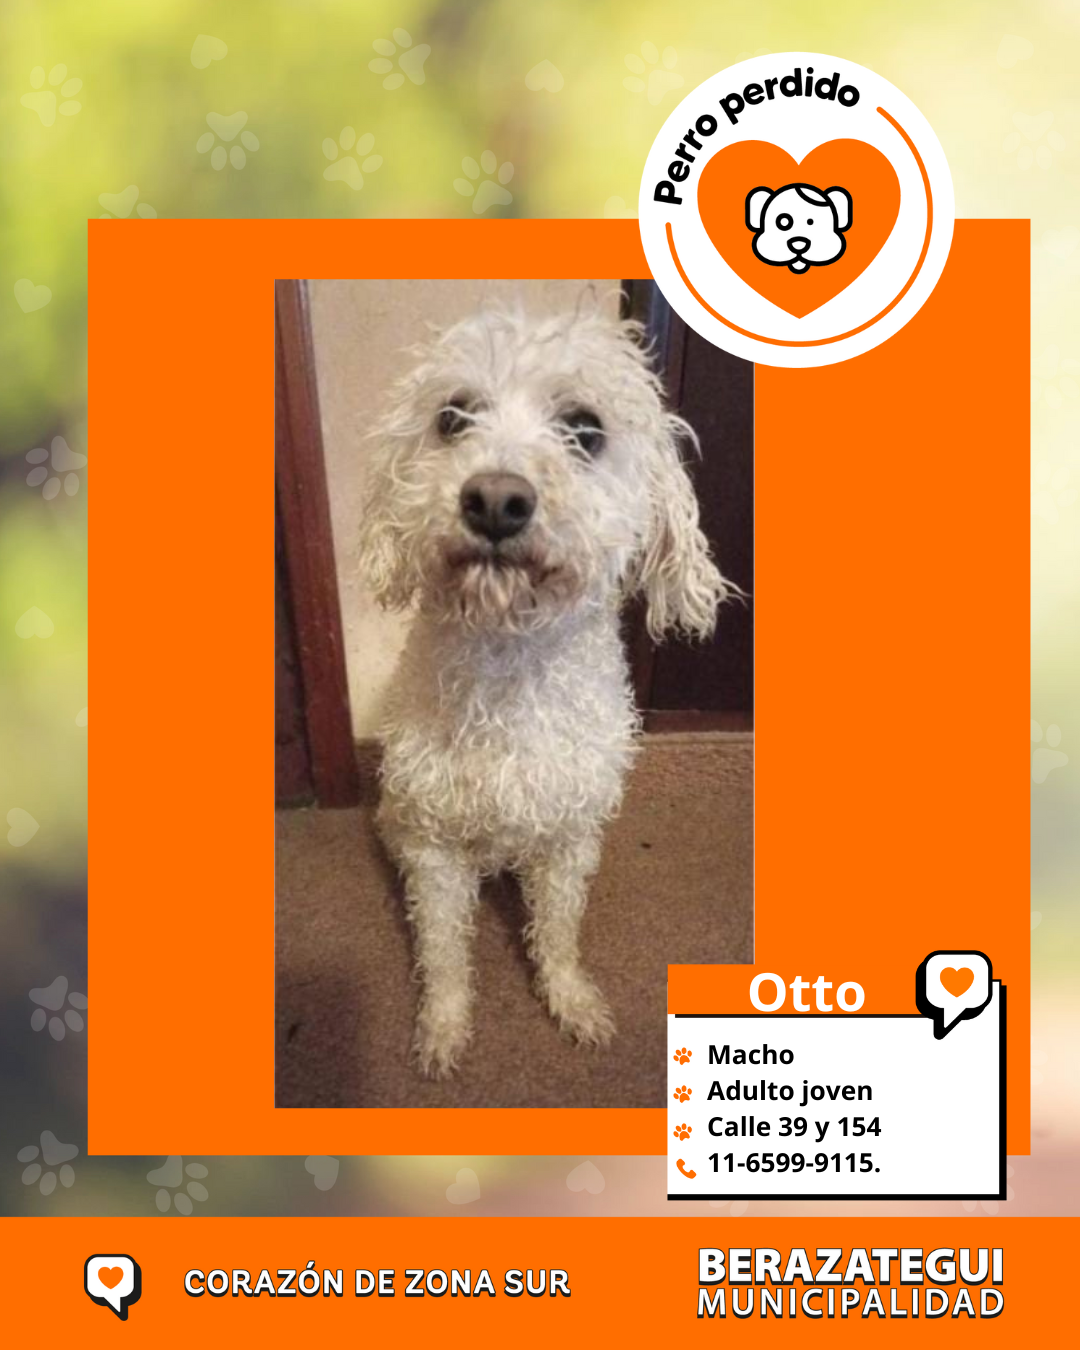 ¡Otto está perdido! 💔